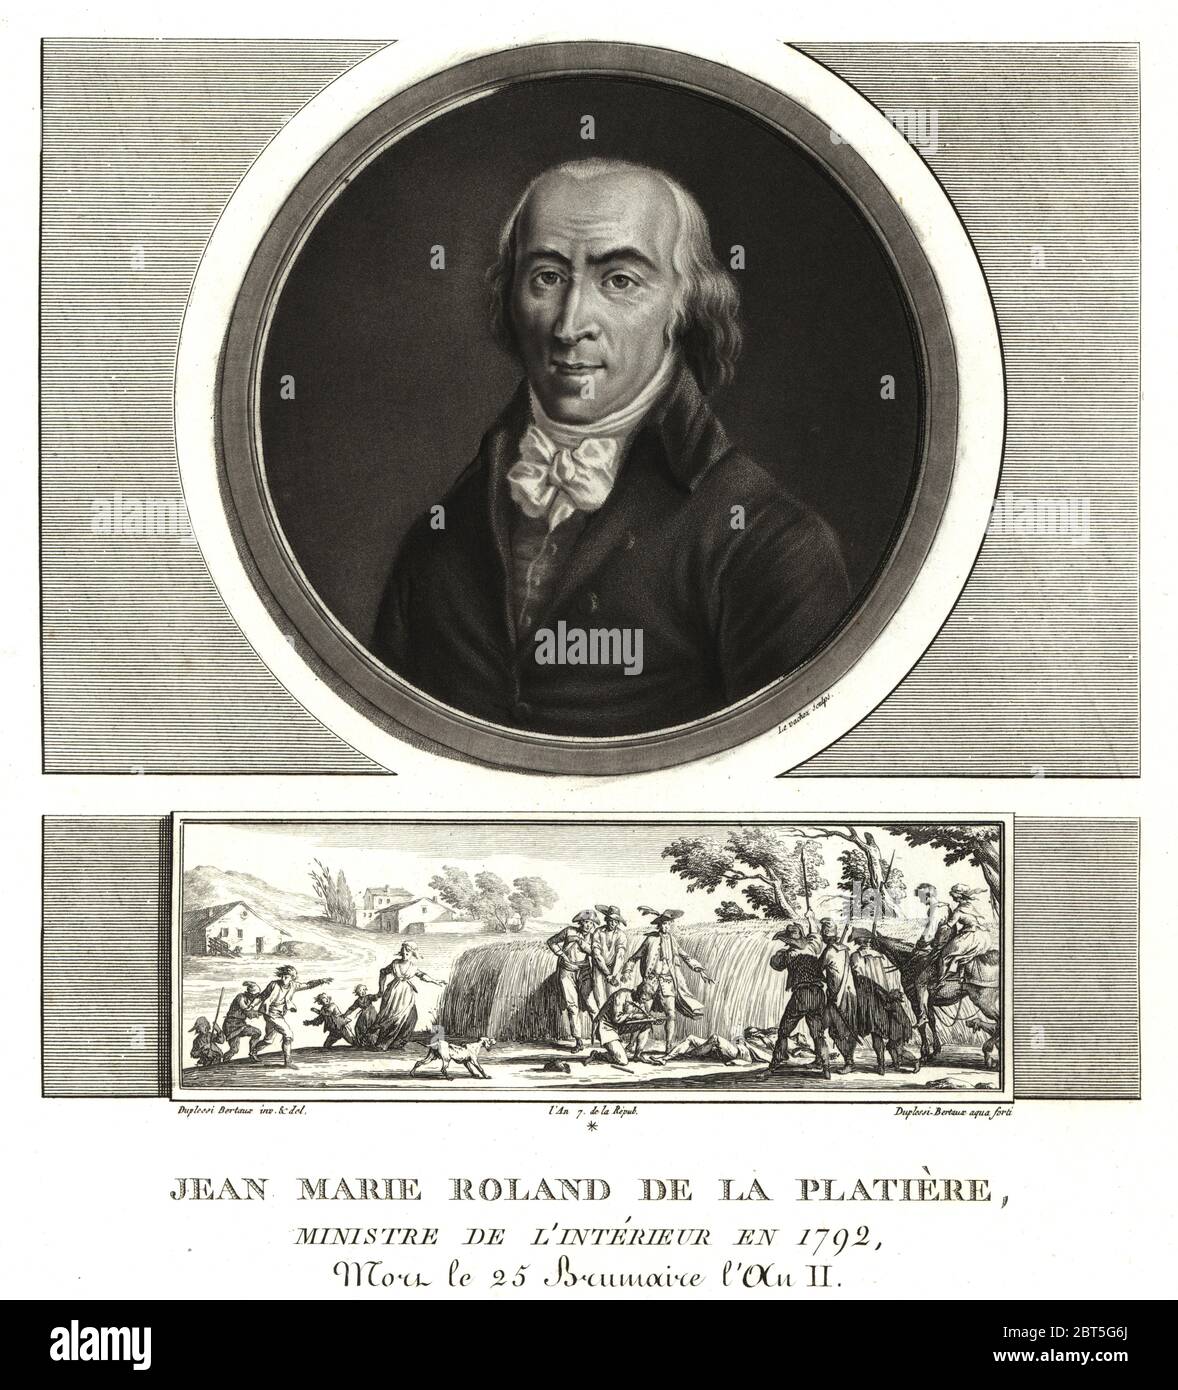 Jean Marie Roland de la Platiere, Ministre de l'Intérieur, 1792. S'est  suicidé après l'exécution de son épouse. La vignette montre la découverte  de son corps dans un champ sur la route de